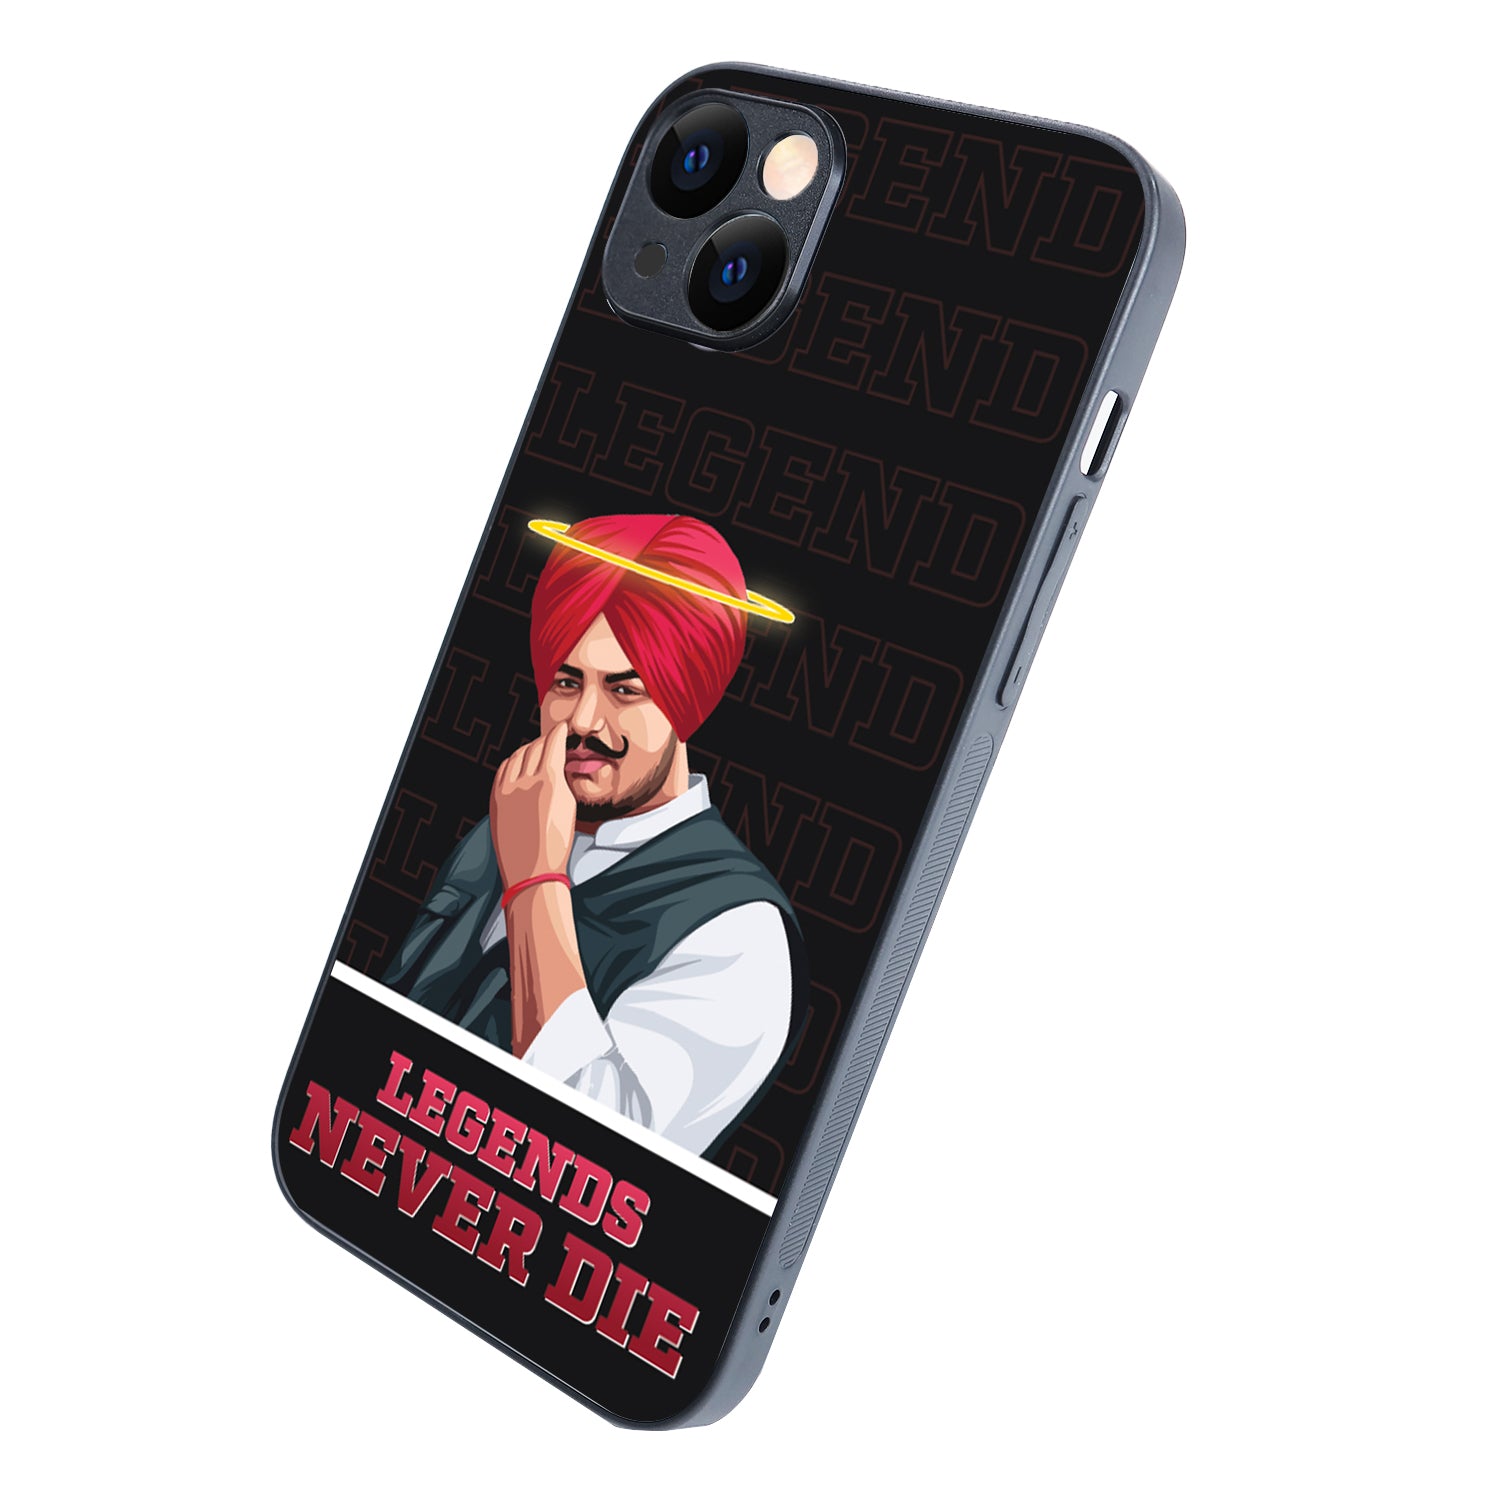 Legend Never Die Black Sidhu Moosewala iPhone 14 Plus Case